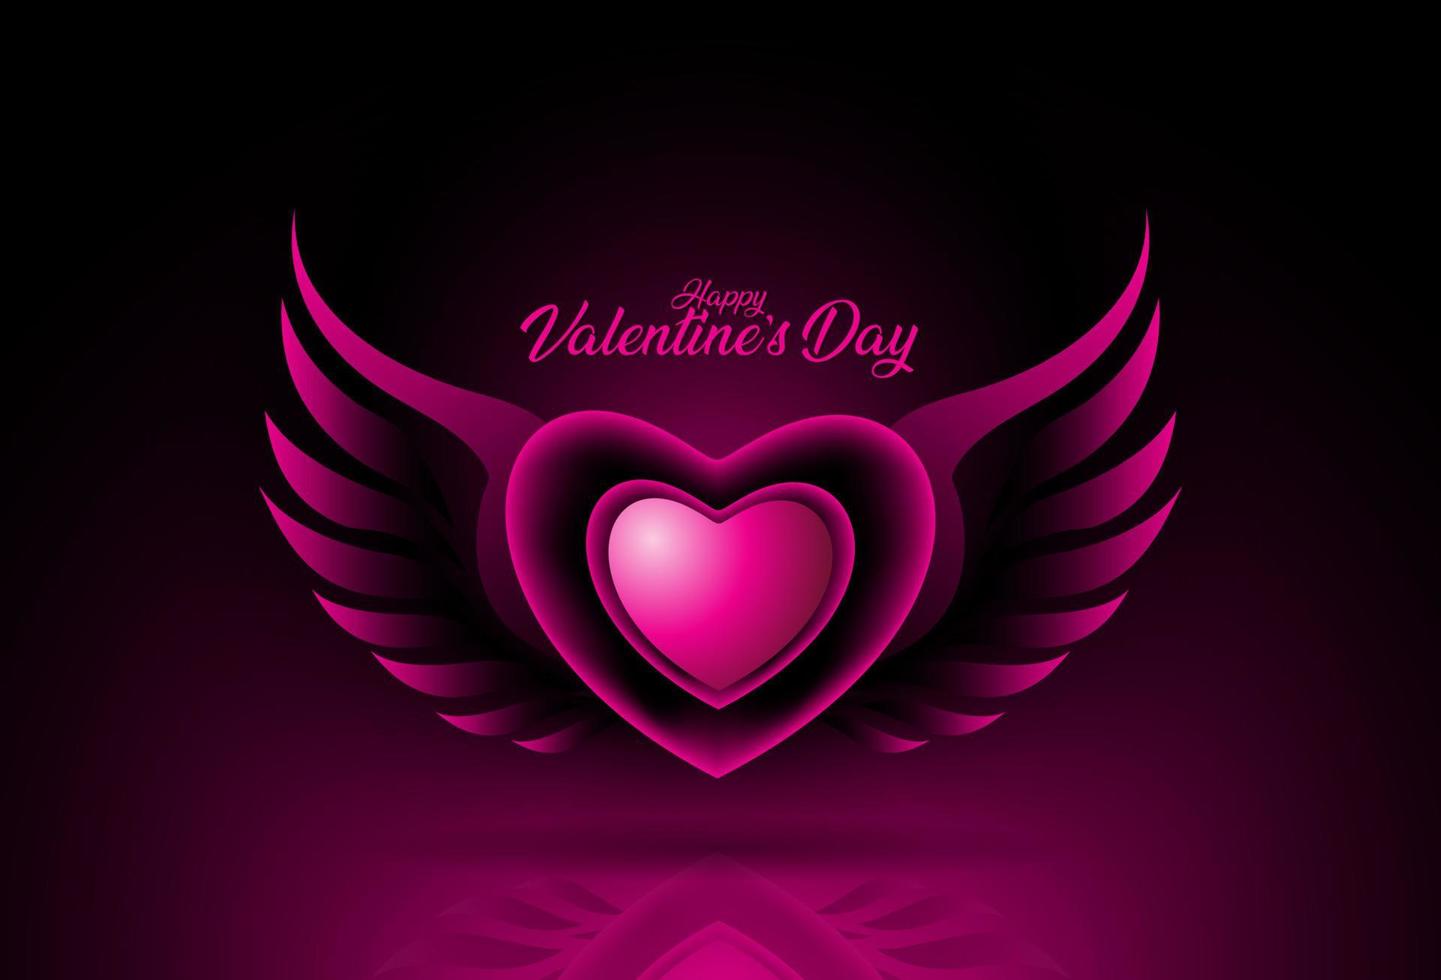 Valentinstag Hintergrund mit rosa Herzform vektor